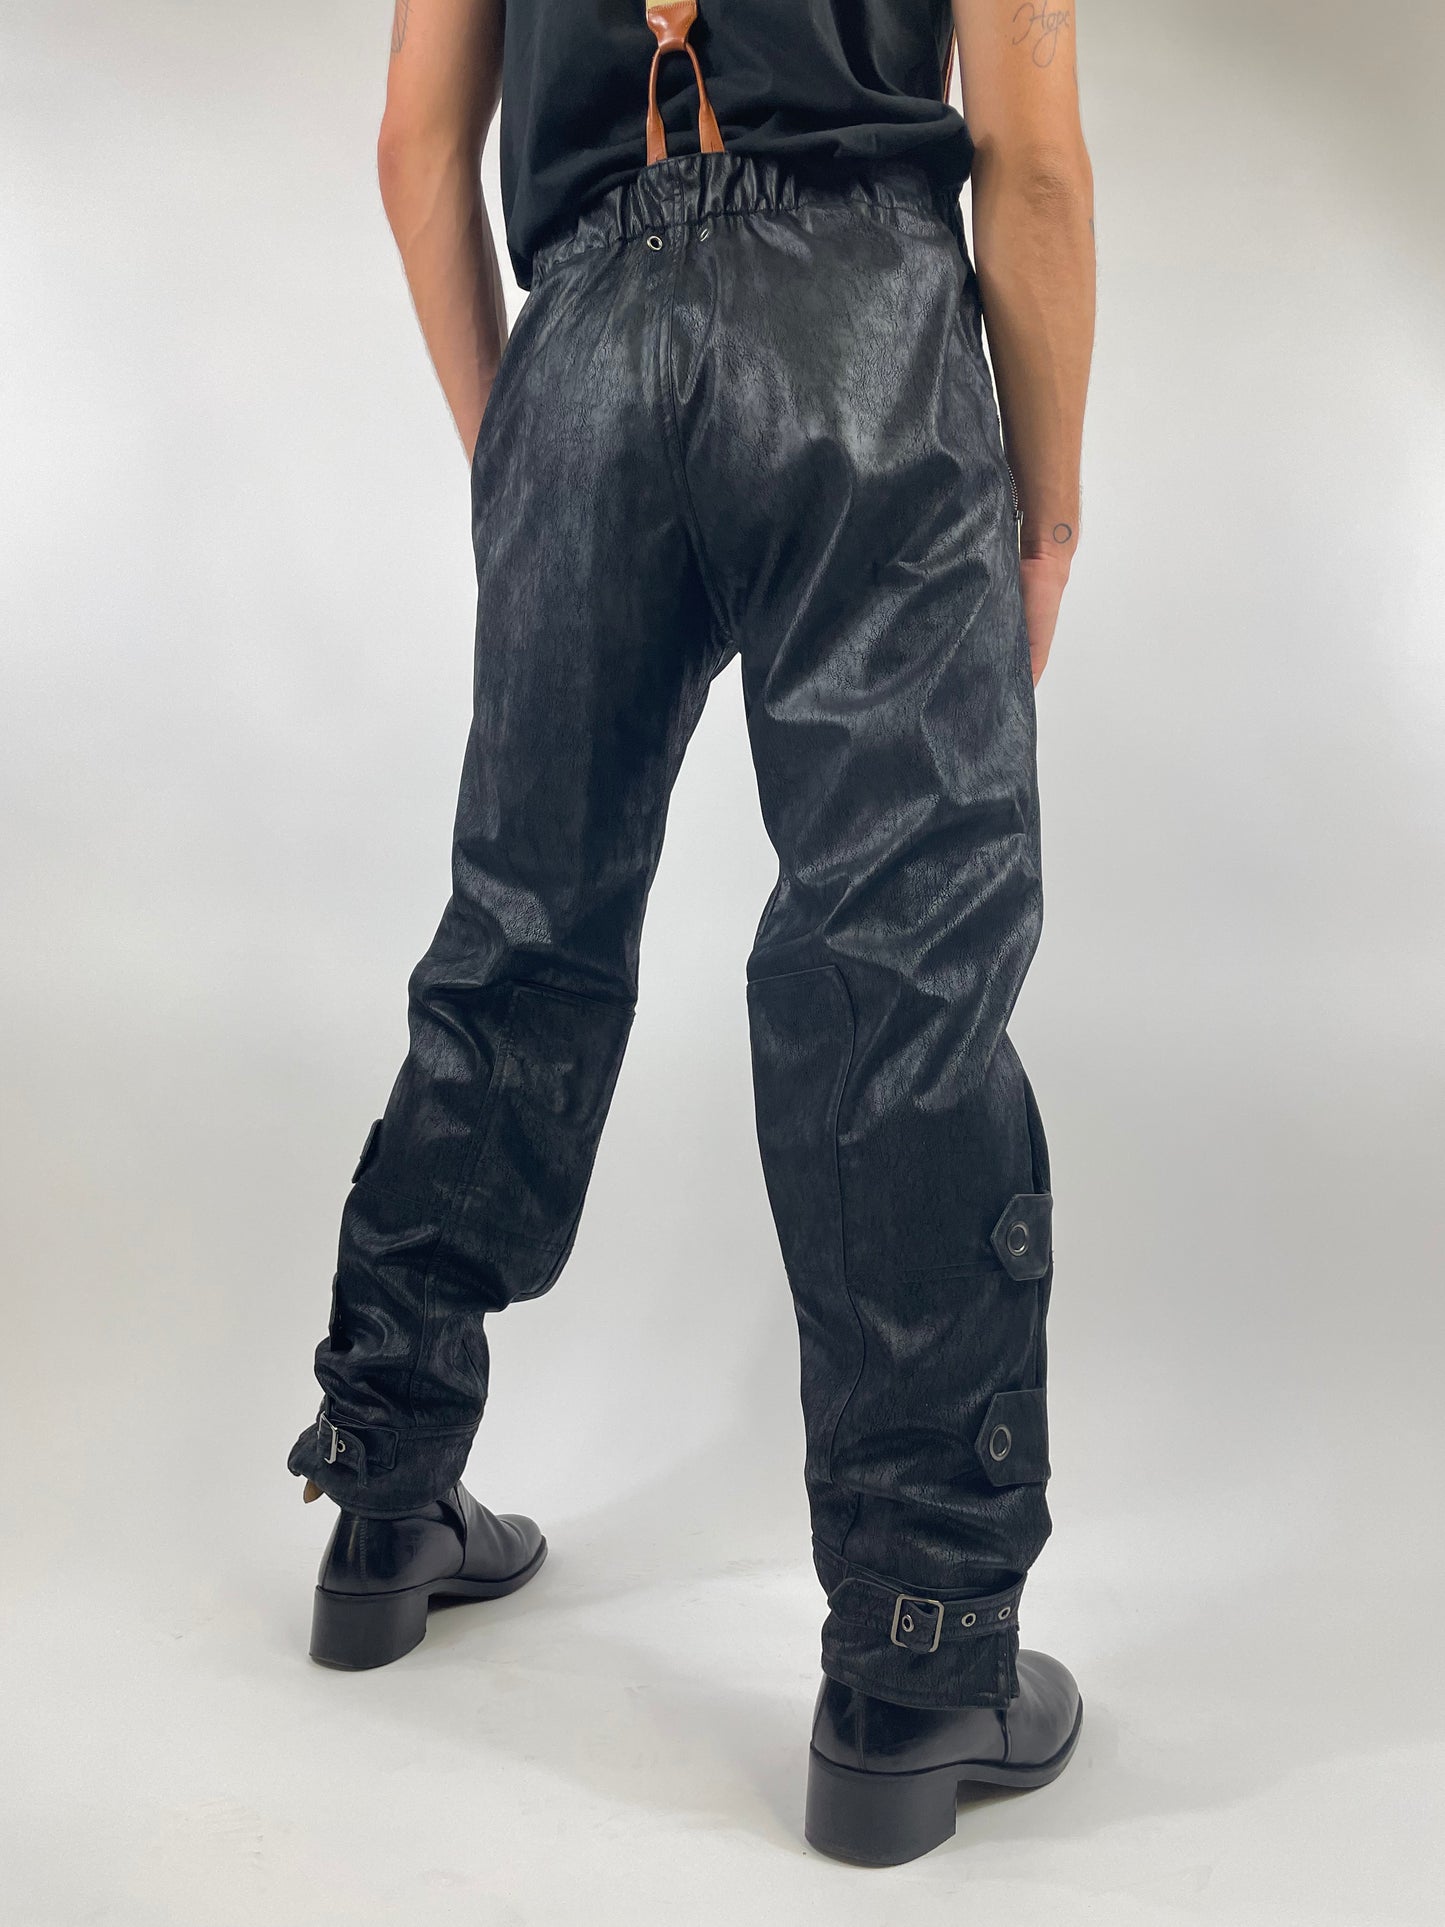 Emporio Armani 1980s genuine leather trousers